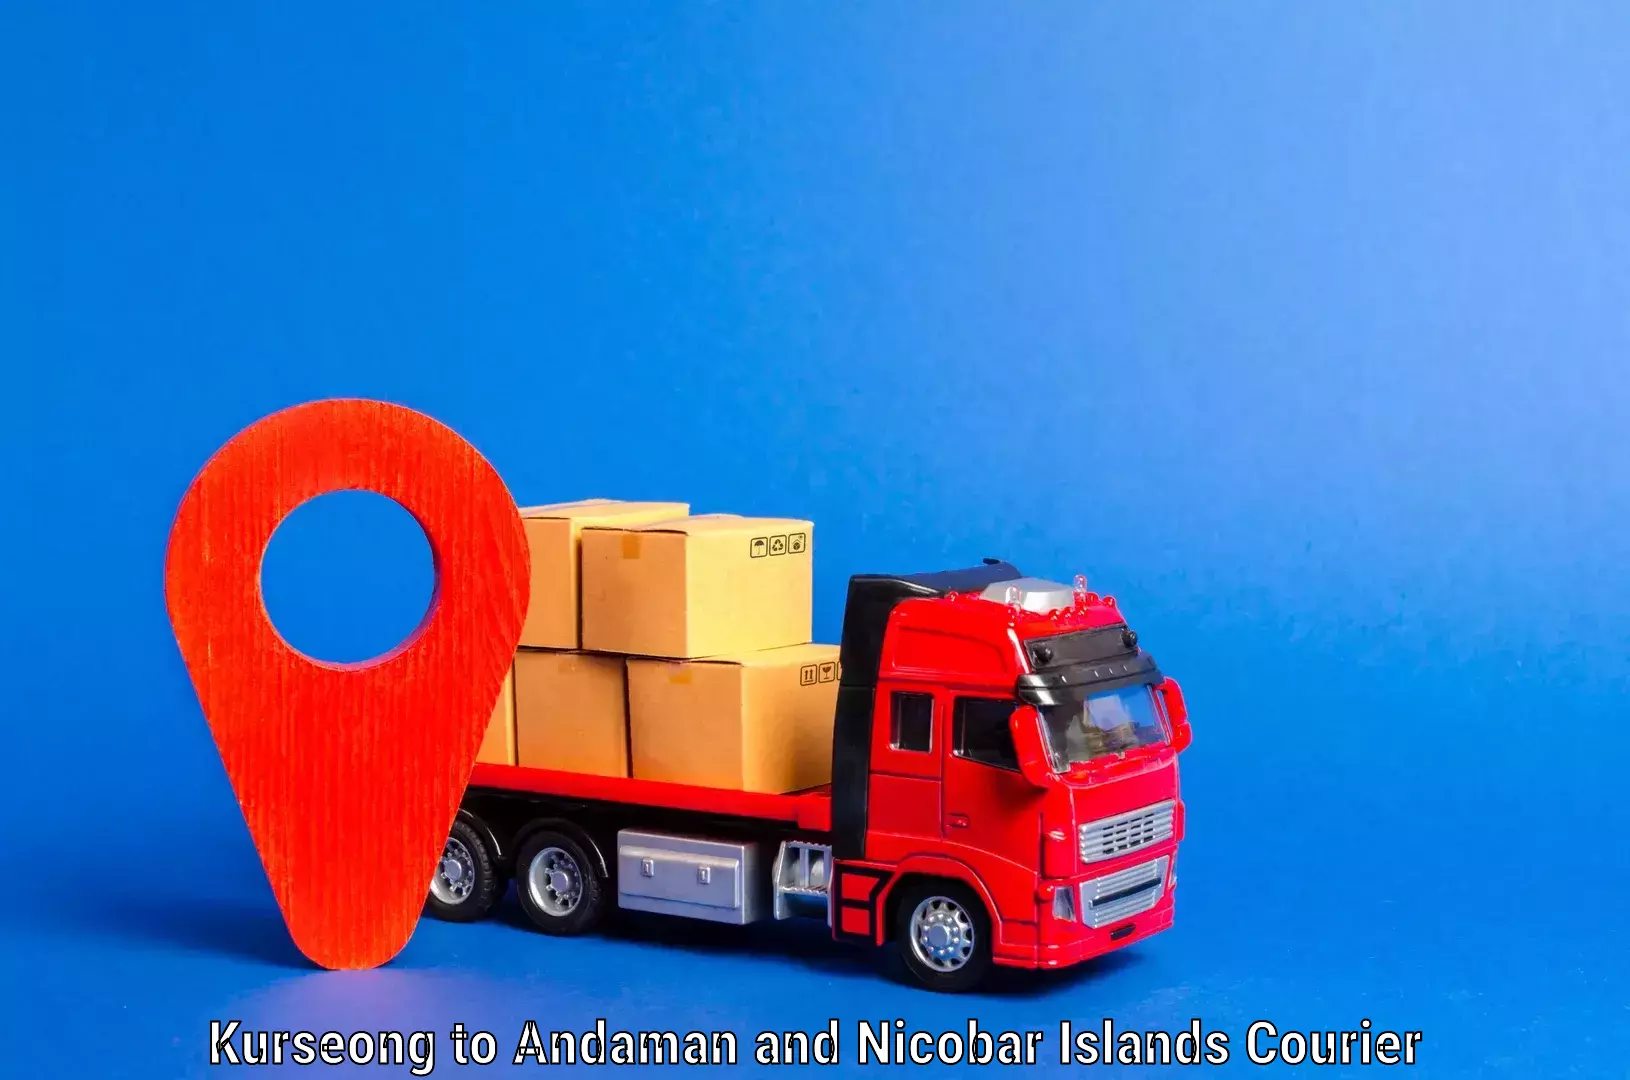 Furniture transport professionals Kurseong to Andaman and Nicobar Islands